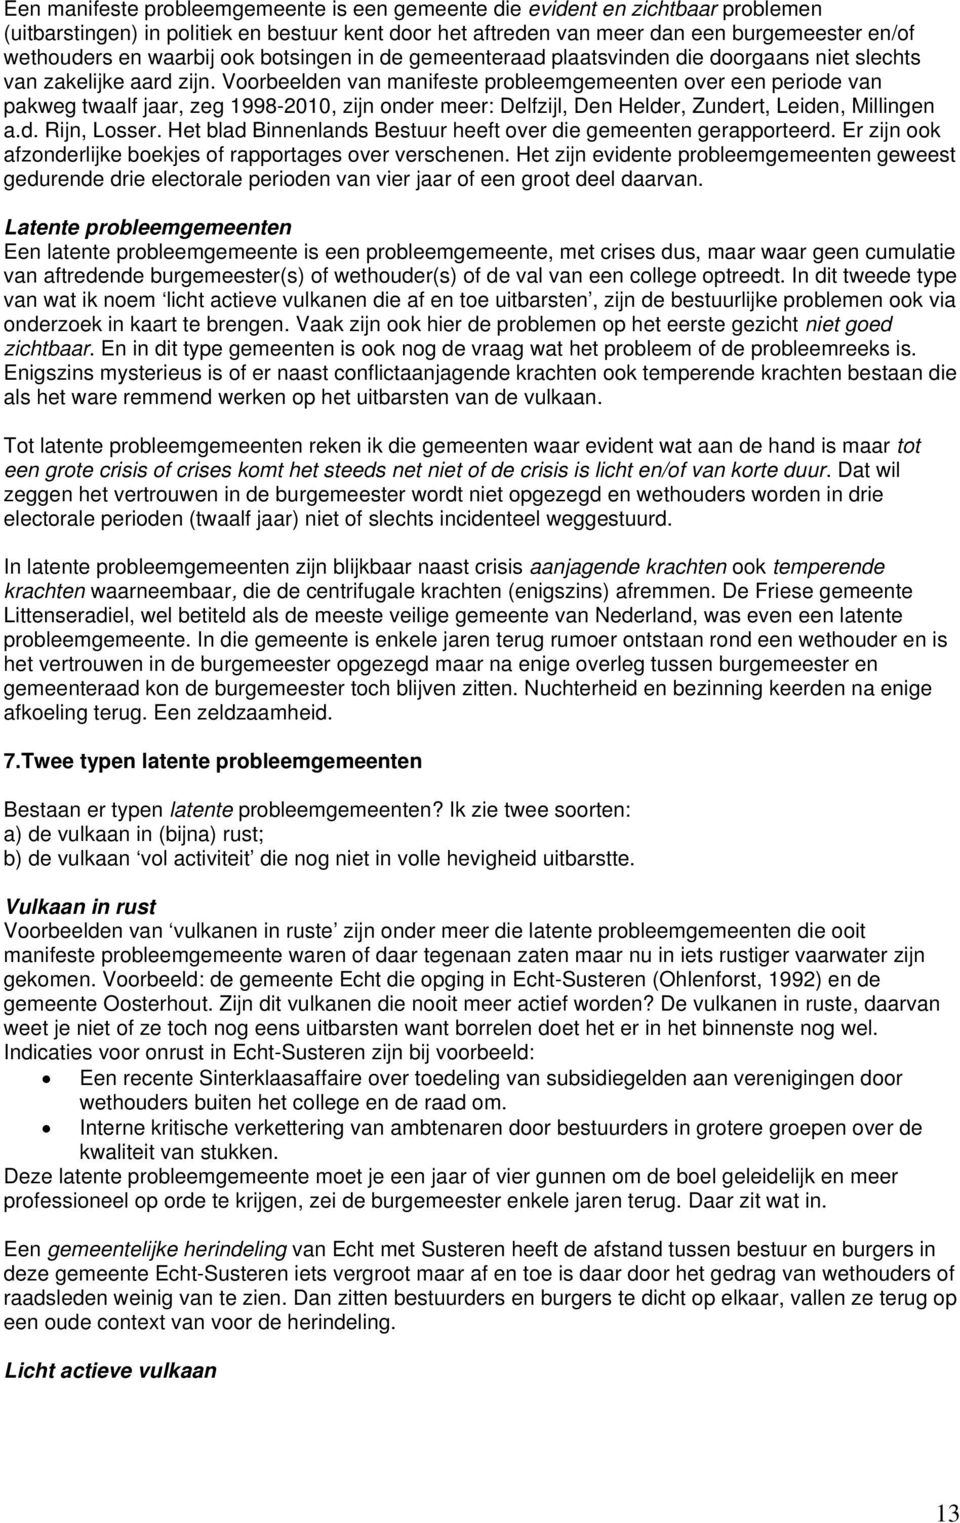 Voorbeelden van manifeste probleemgemeenten over een periode van pakweg twaalf jaar, zeg 1998-2010, zijn onder meer: Delfzijl, Den Helder, Zundert, Leiden, Millingen a.d. Rijn, Losser.